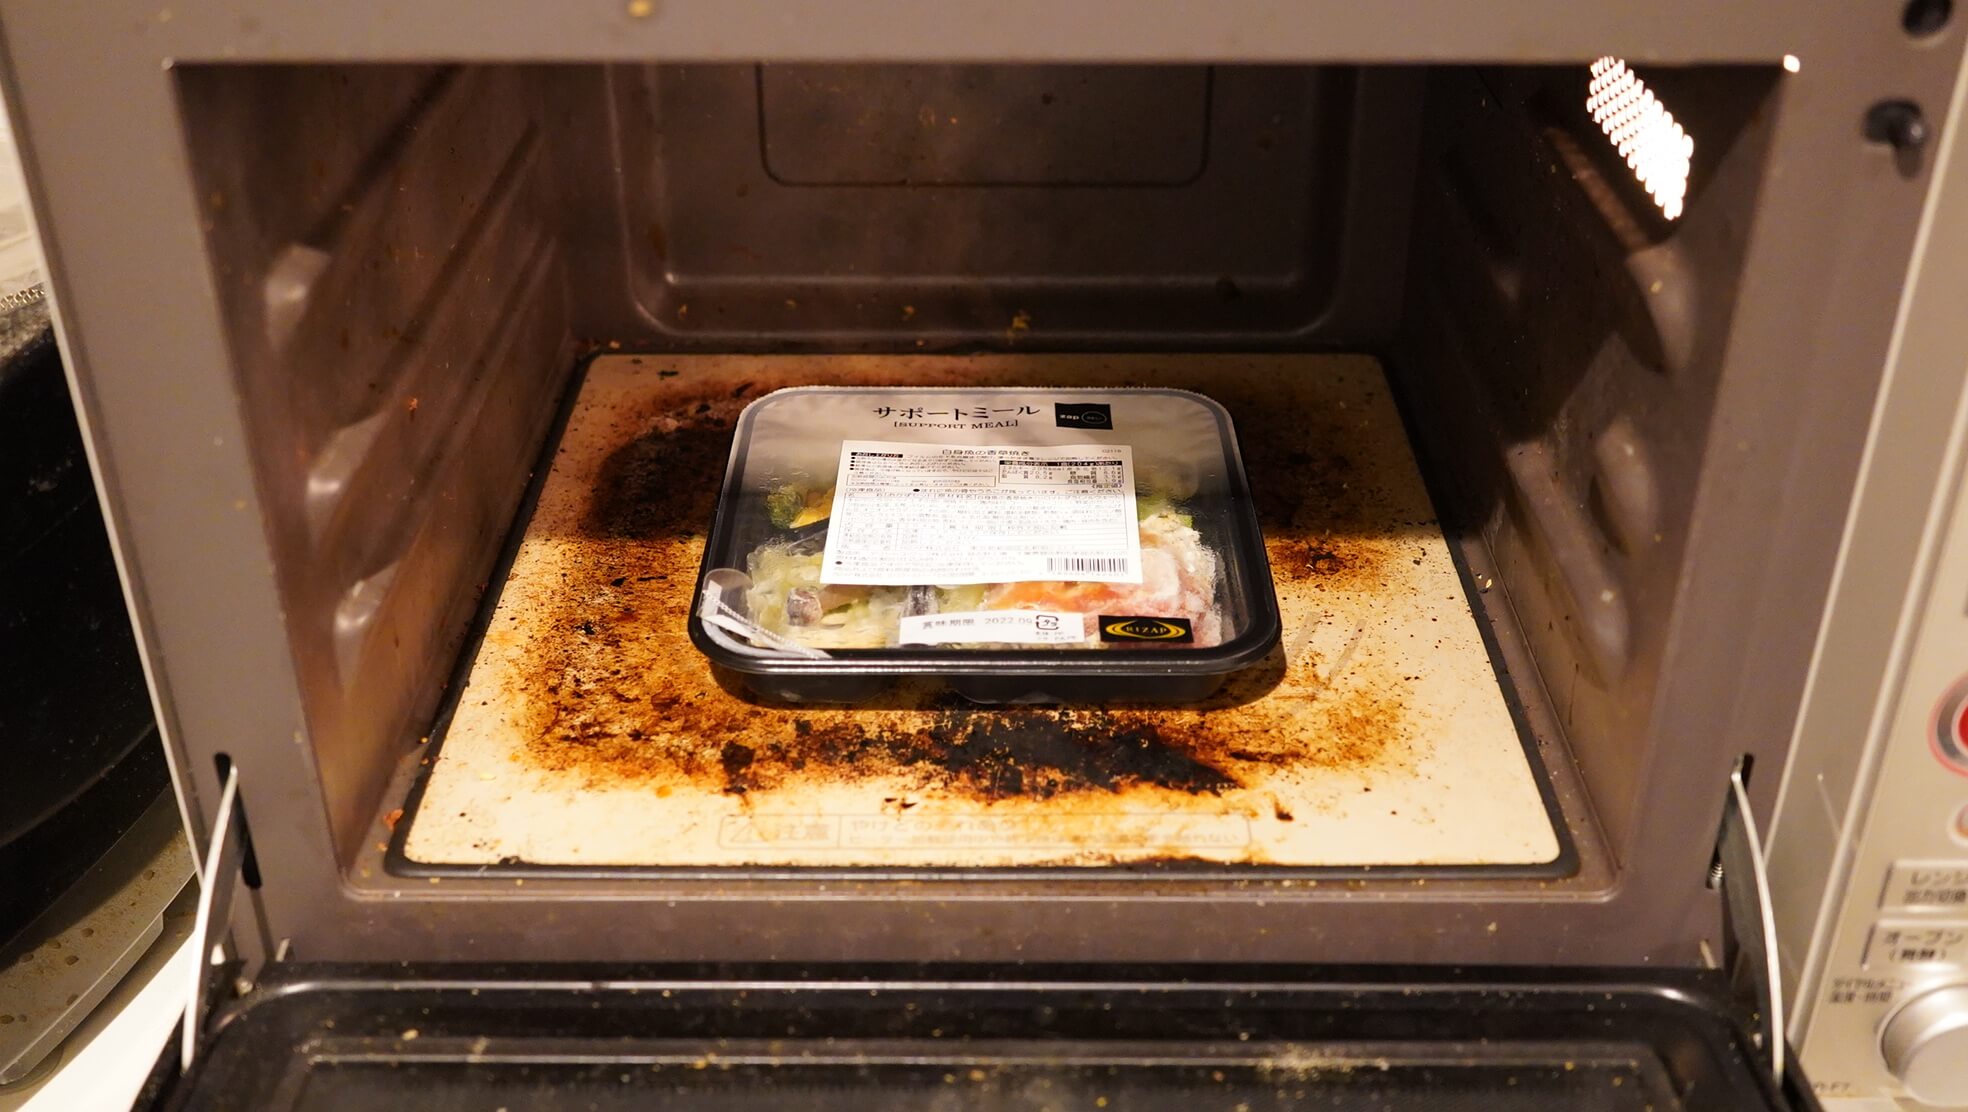 ライザップの冷凍弁当・サポートミール「白身魚の香草焼き」を電子レンジで加熱している写真